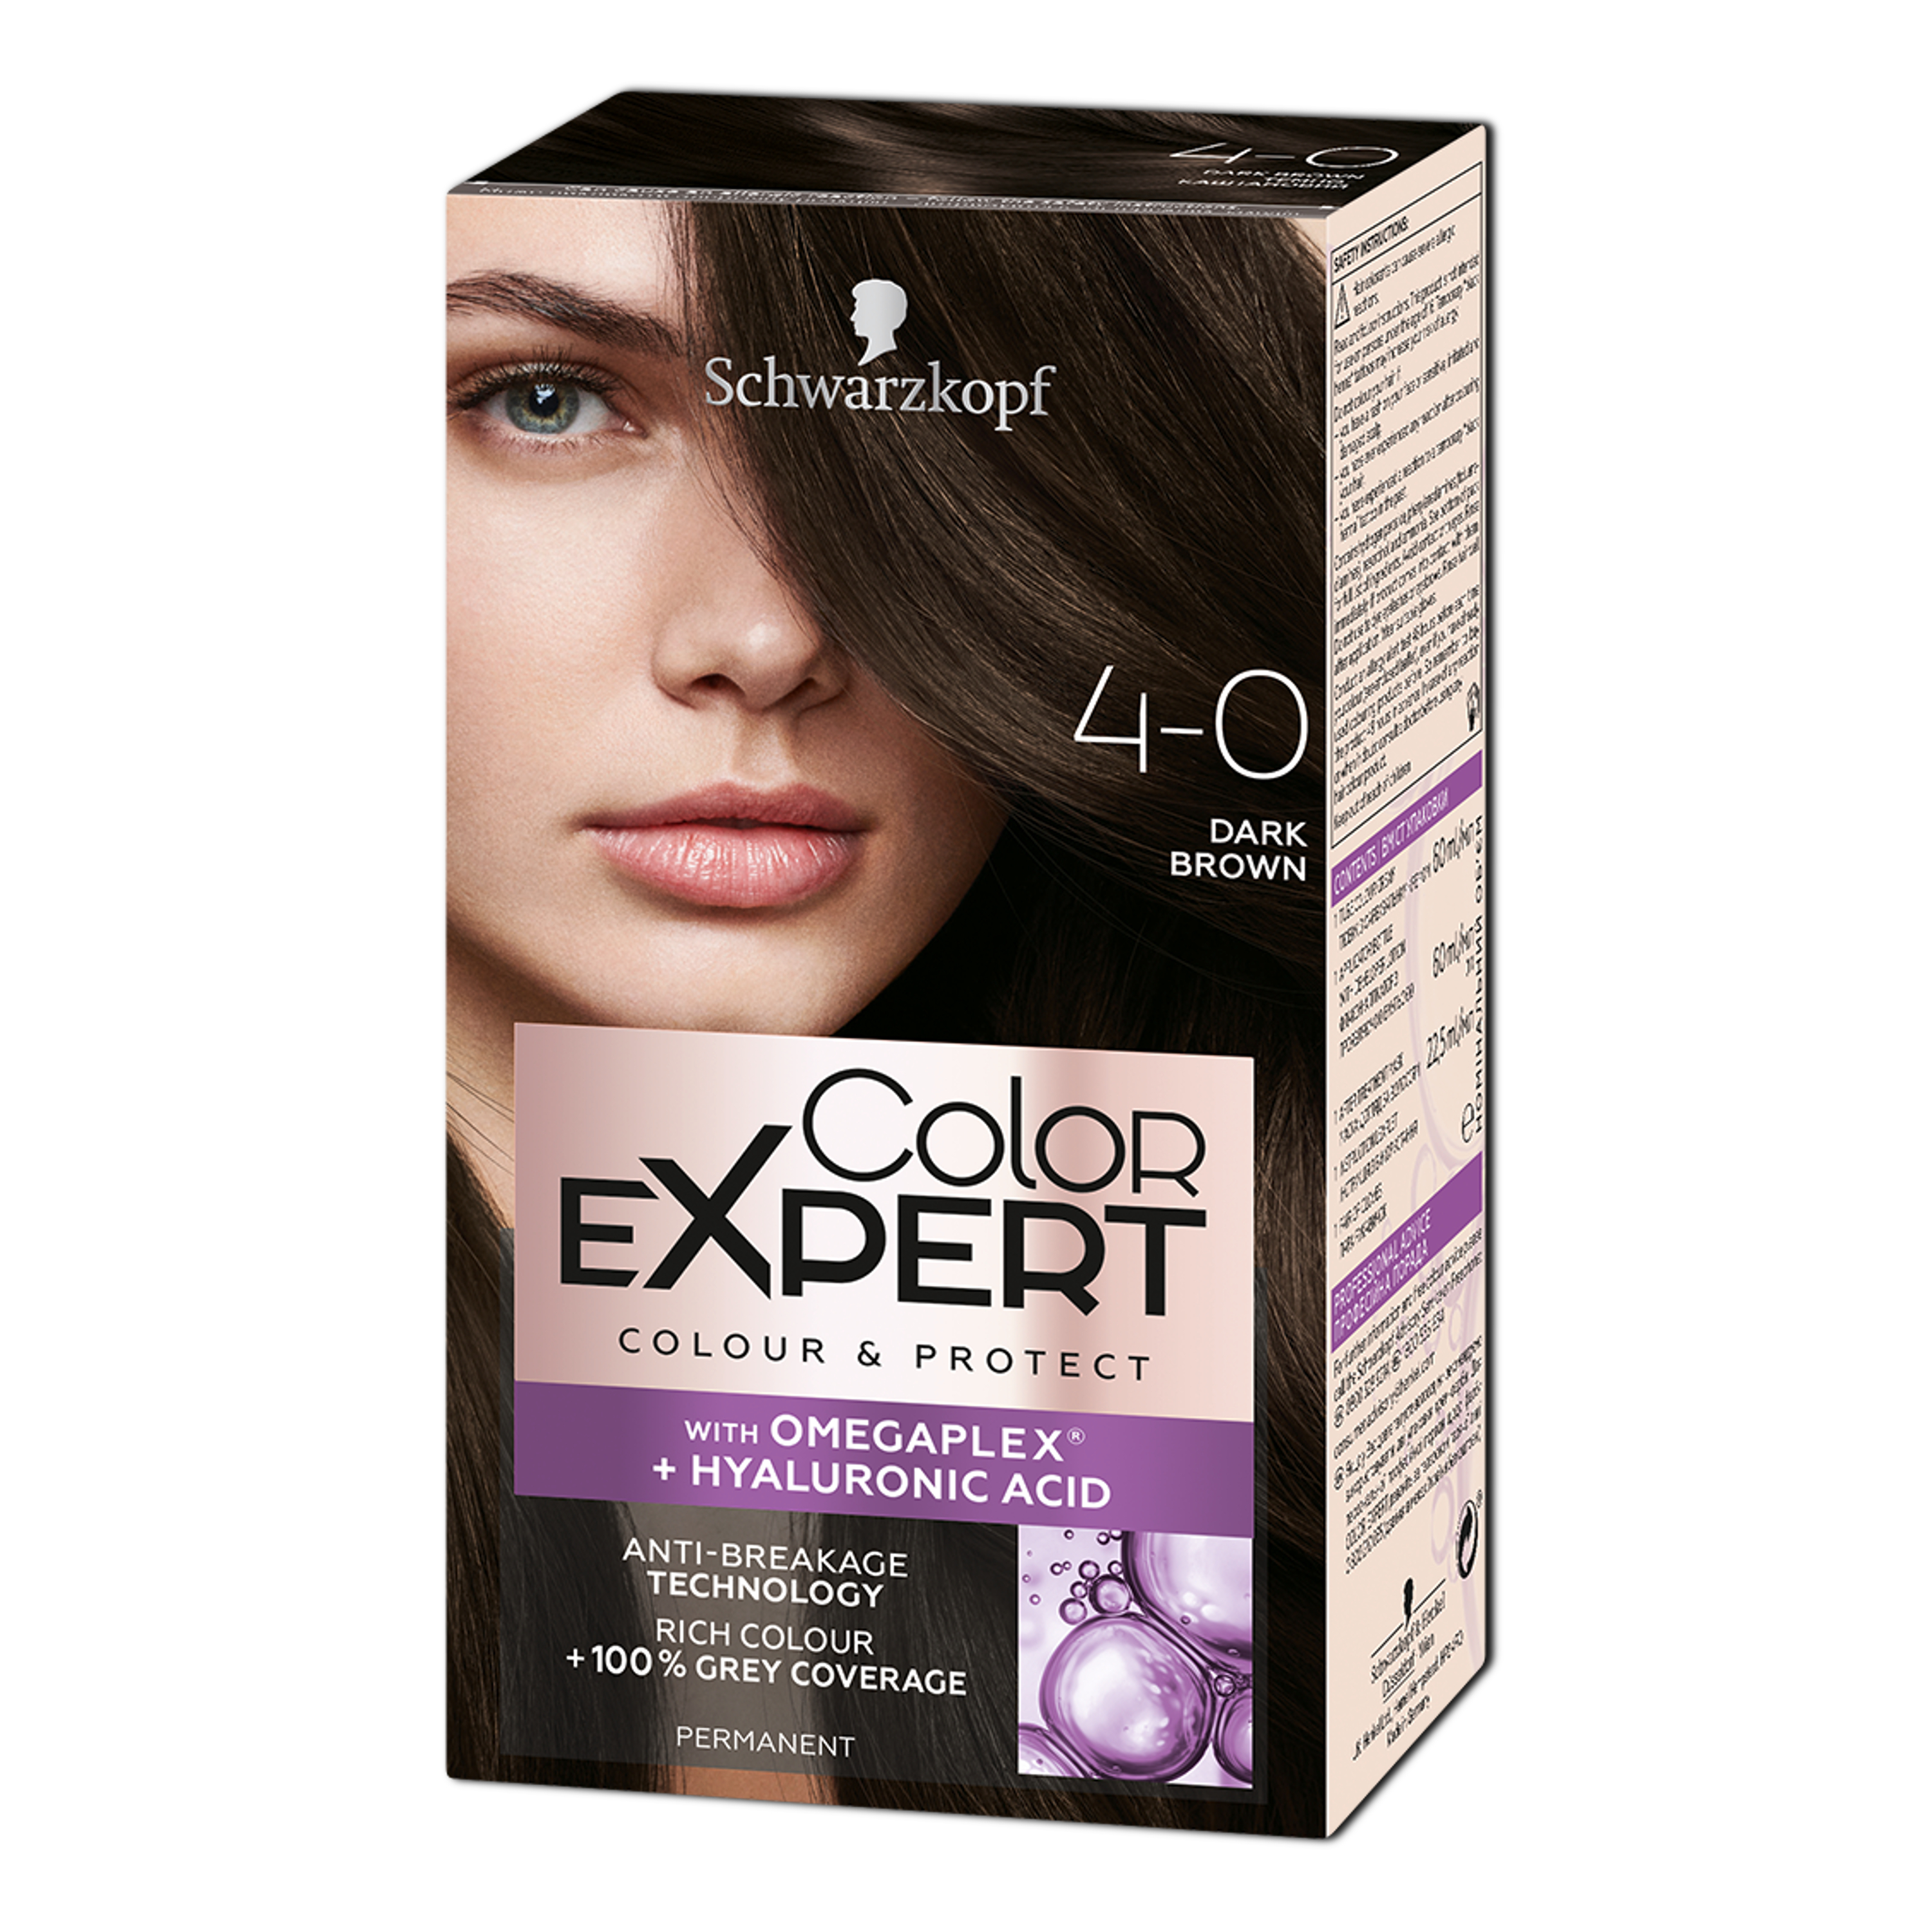 Крем-фарба для волосся Schwarzkopf Color Expert, з гіалуроновою кислотою, відтінок 4-0 (Темно-каштановий), 142,5 мл - фото 1